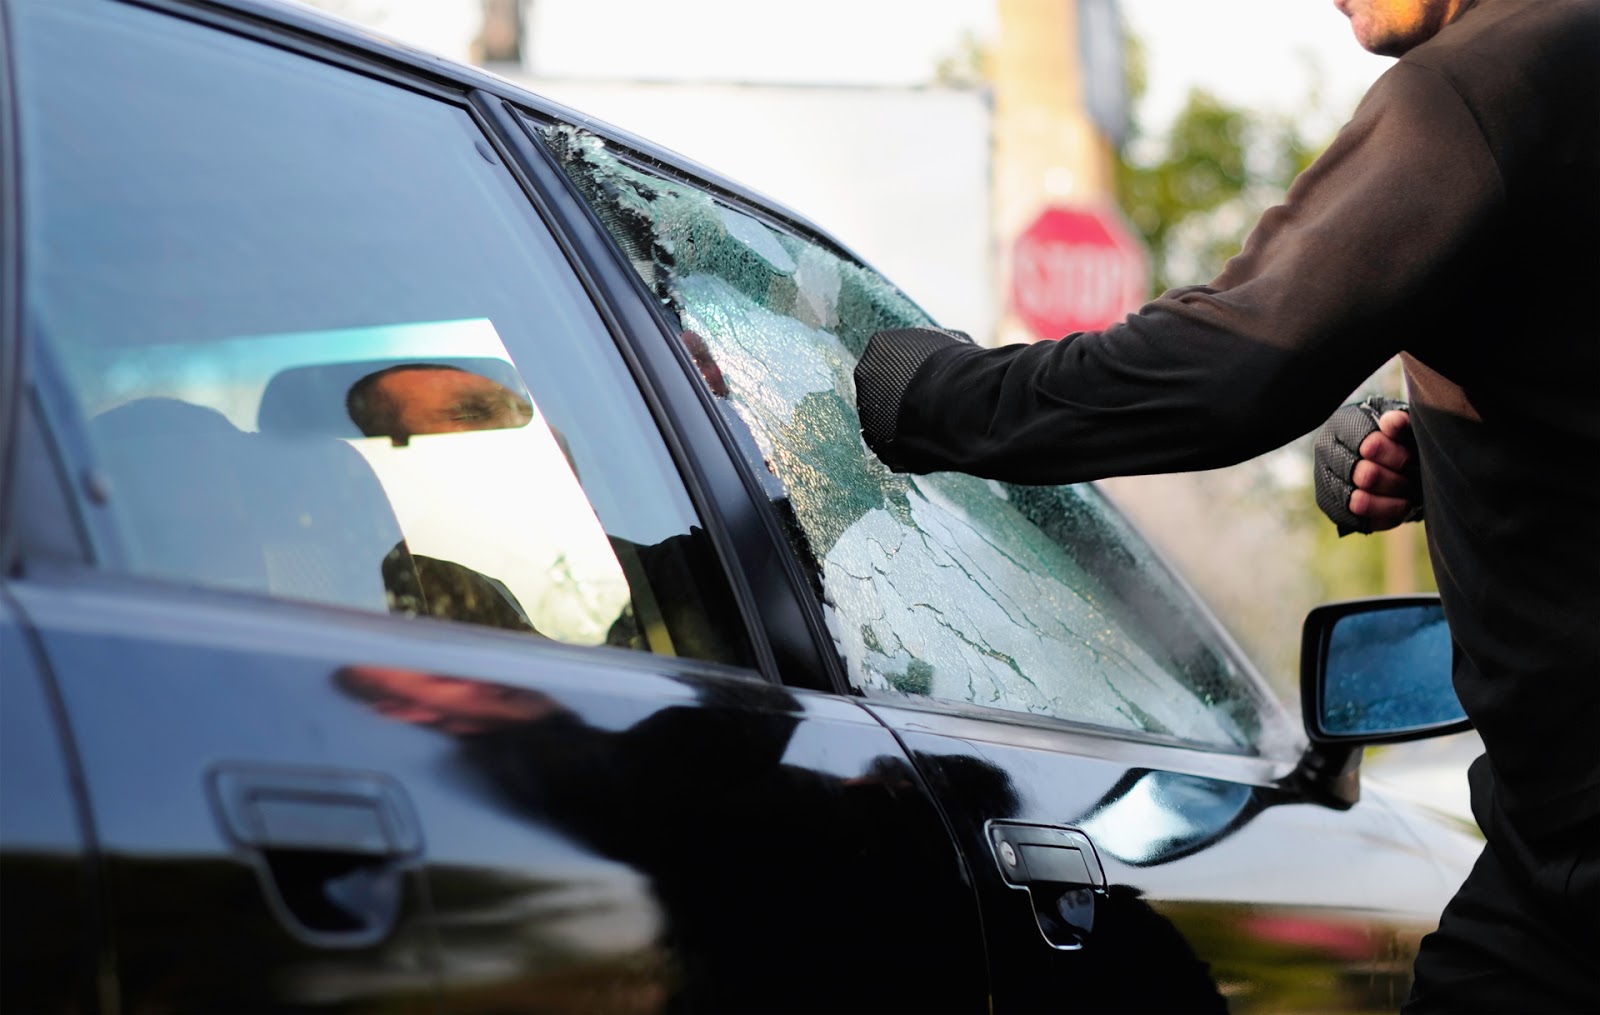 Autoscheiben bei Autounfall einschlagen? Das ist härter als